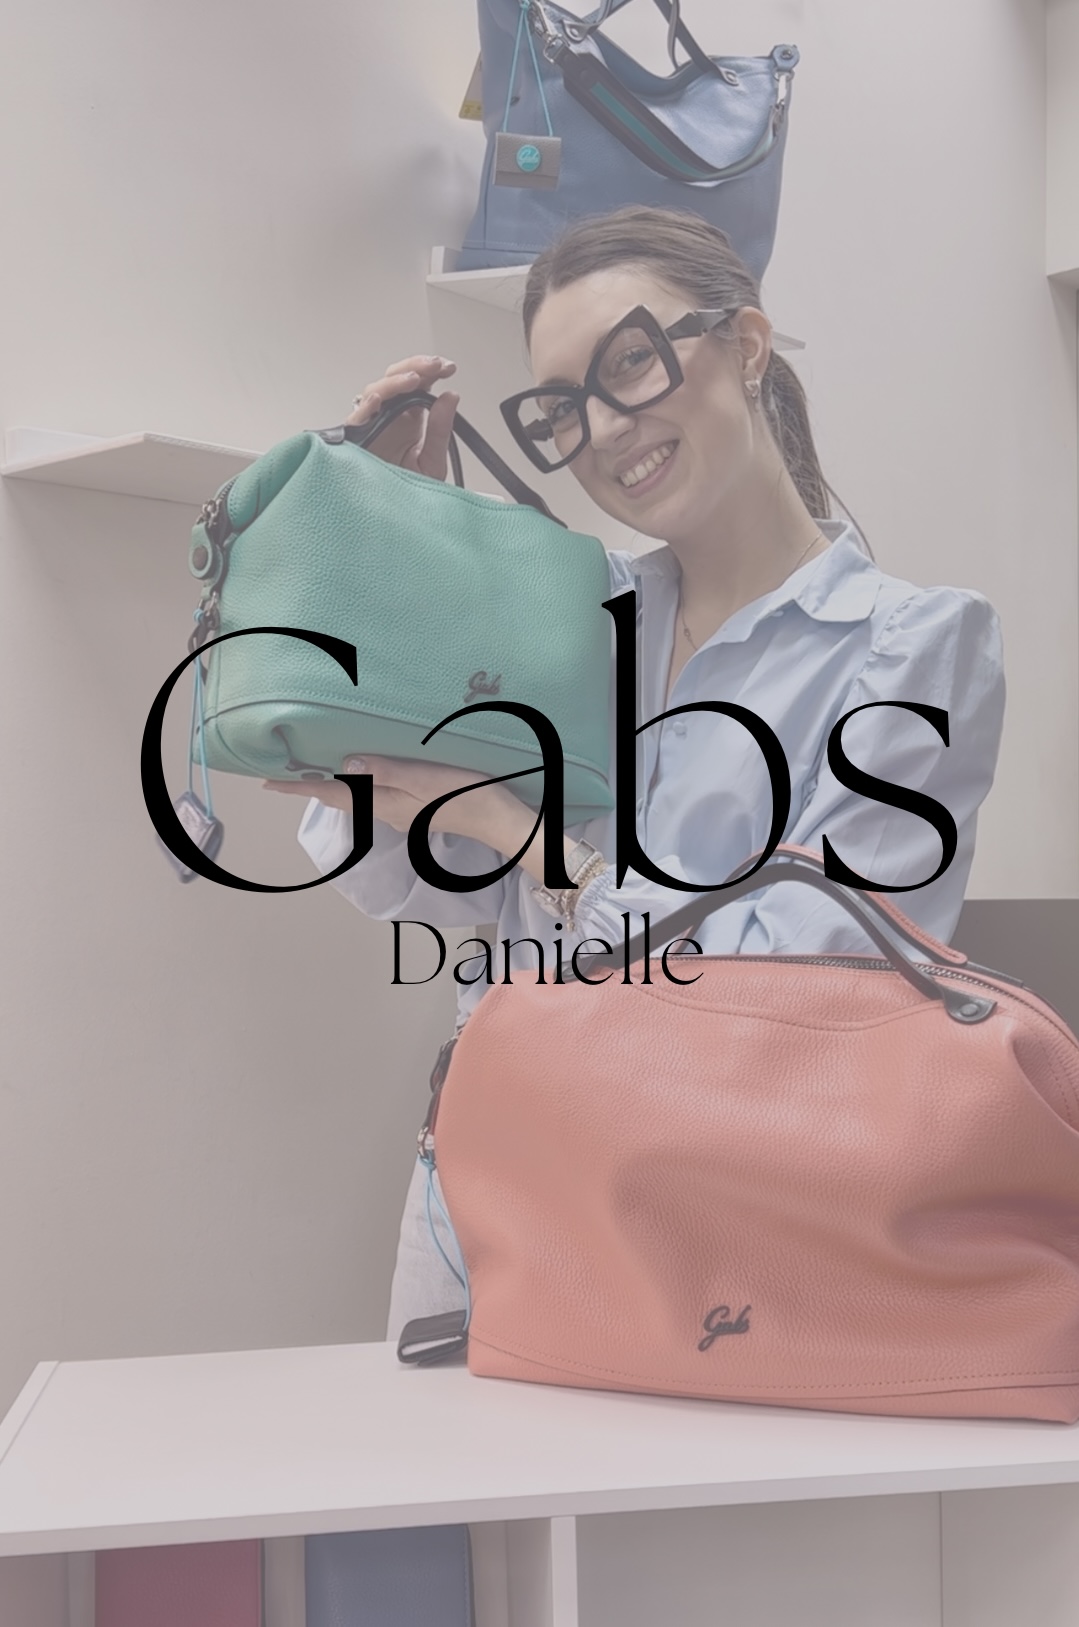 GABS -Danielle-